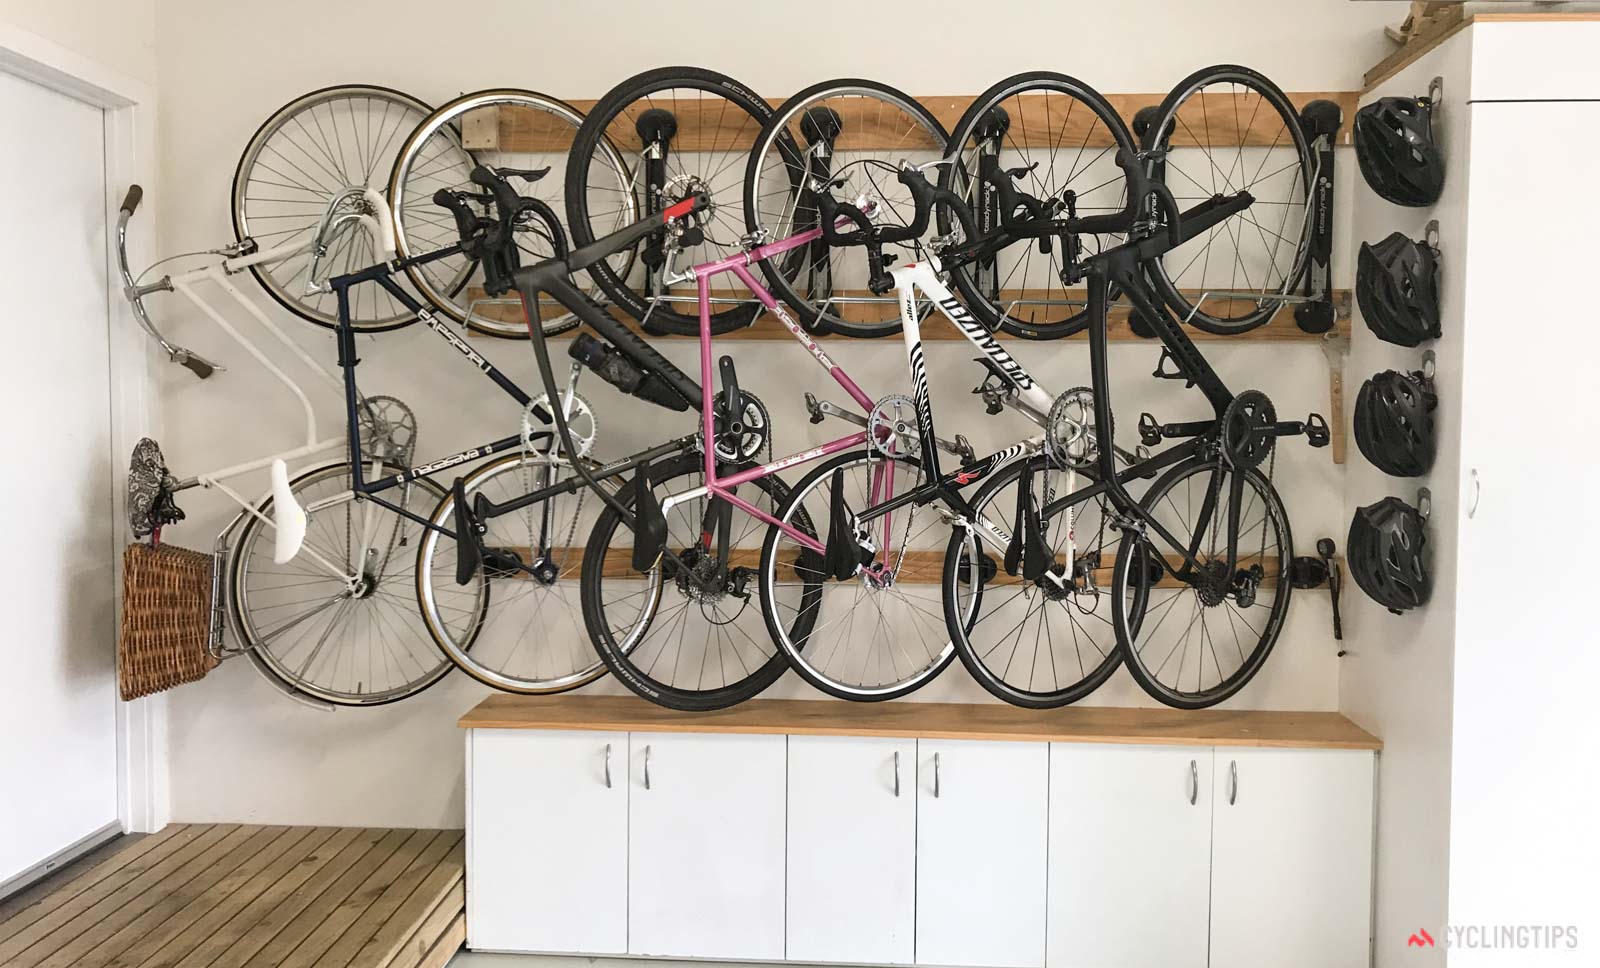 Шкаф купе для хранения велосипедов